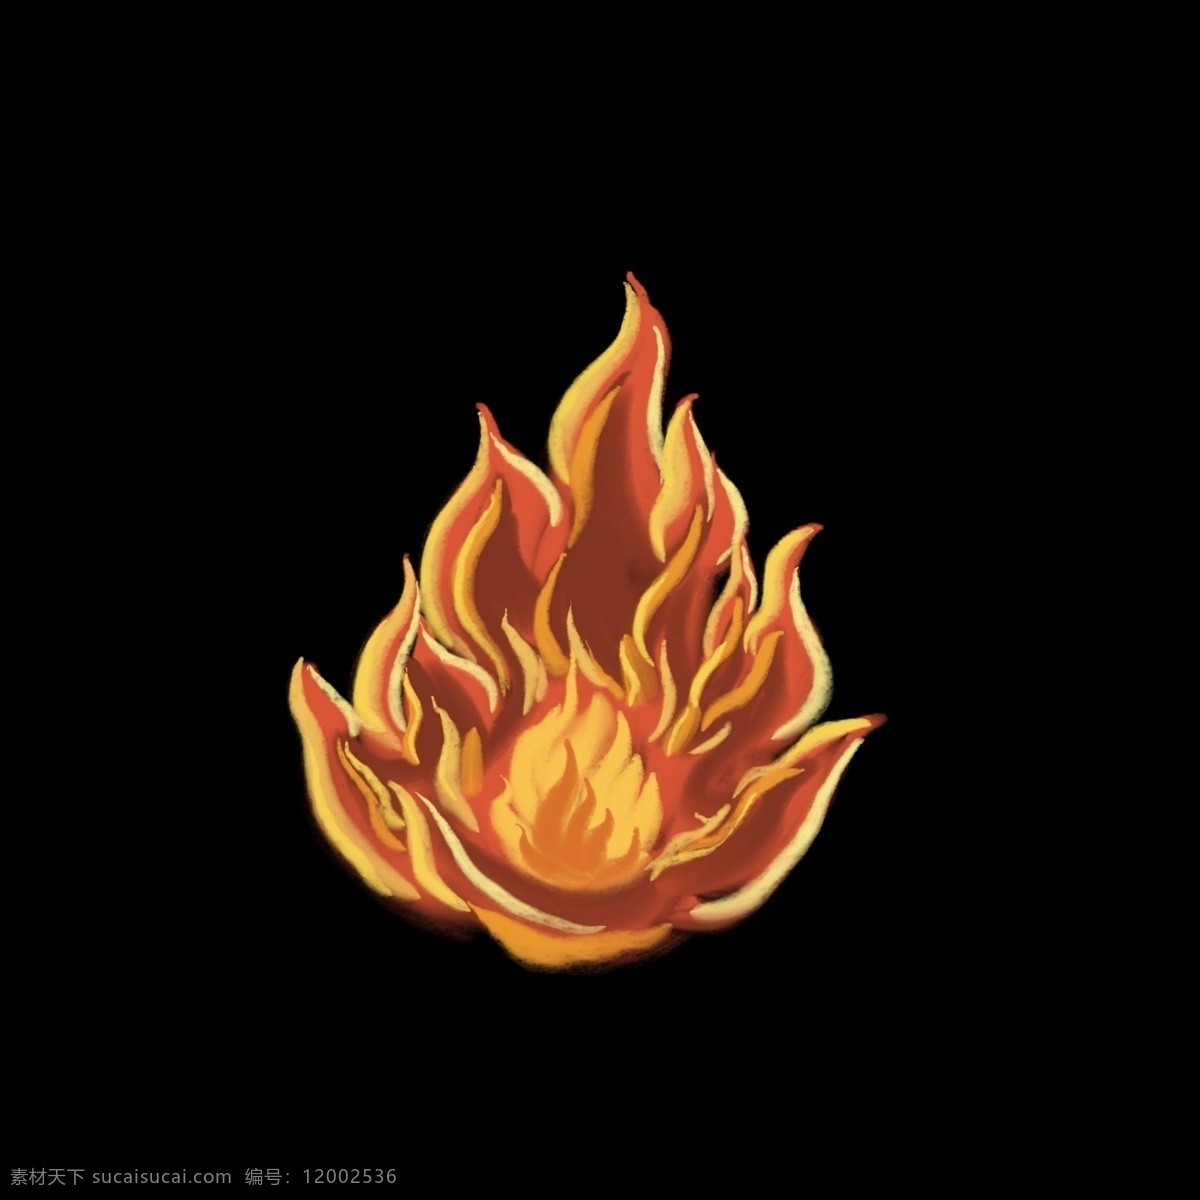 红色 火焰 高温 融化 热情似火 火急火燎 写实风格 简约简单 清新自然 热浪 注意防暑 烈烈火焰 燃烧